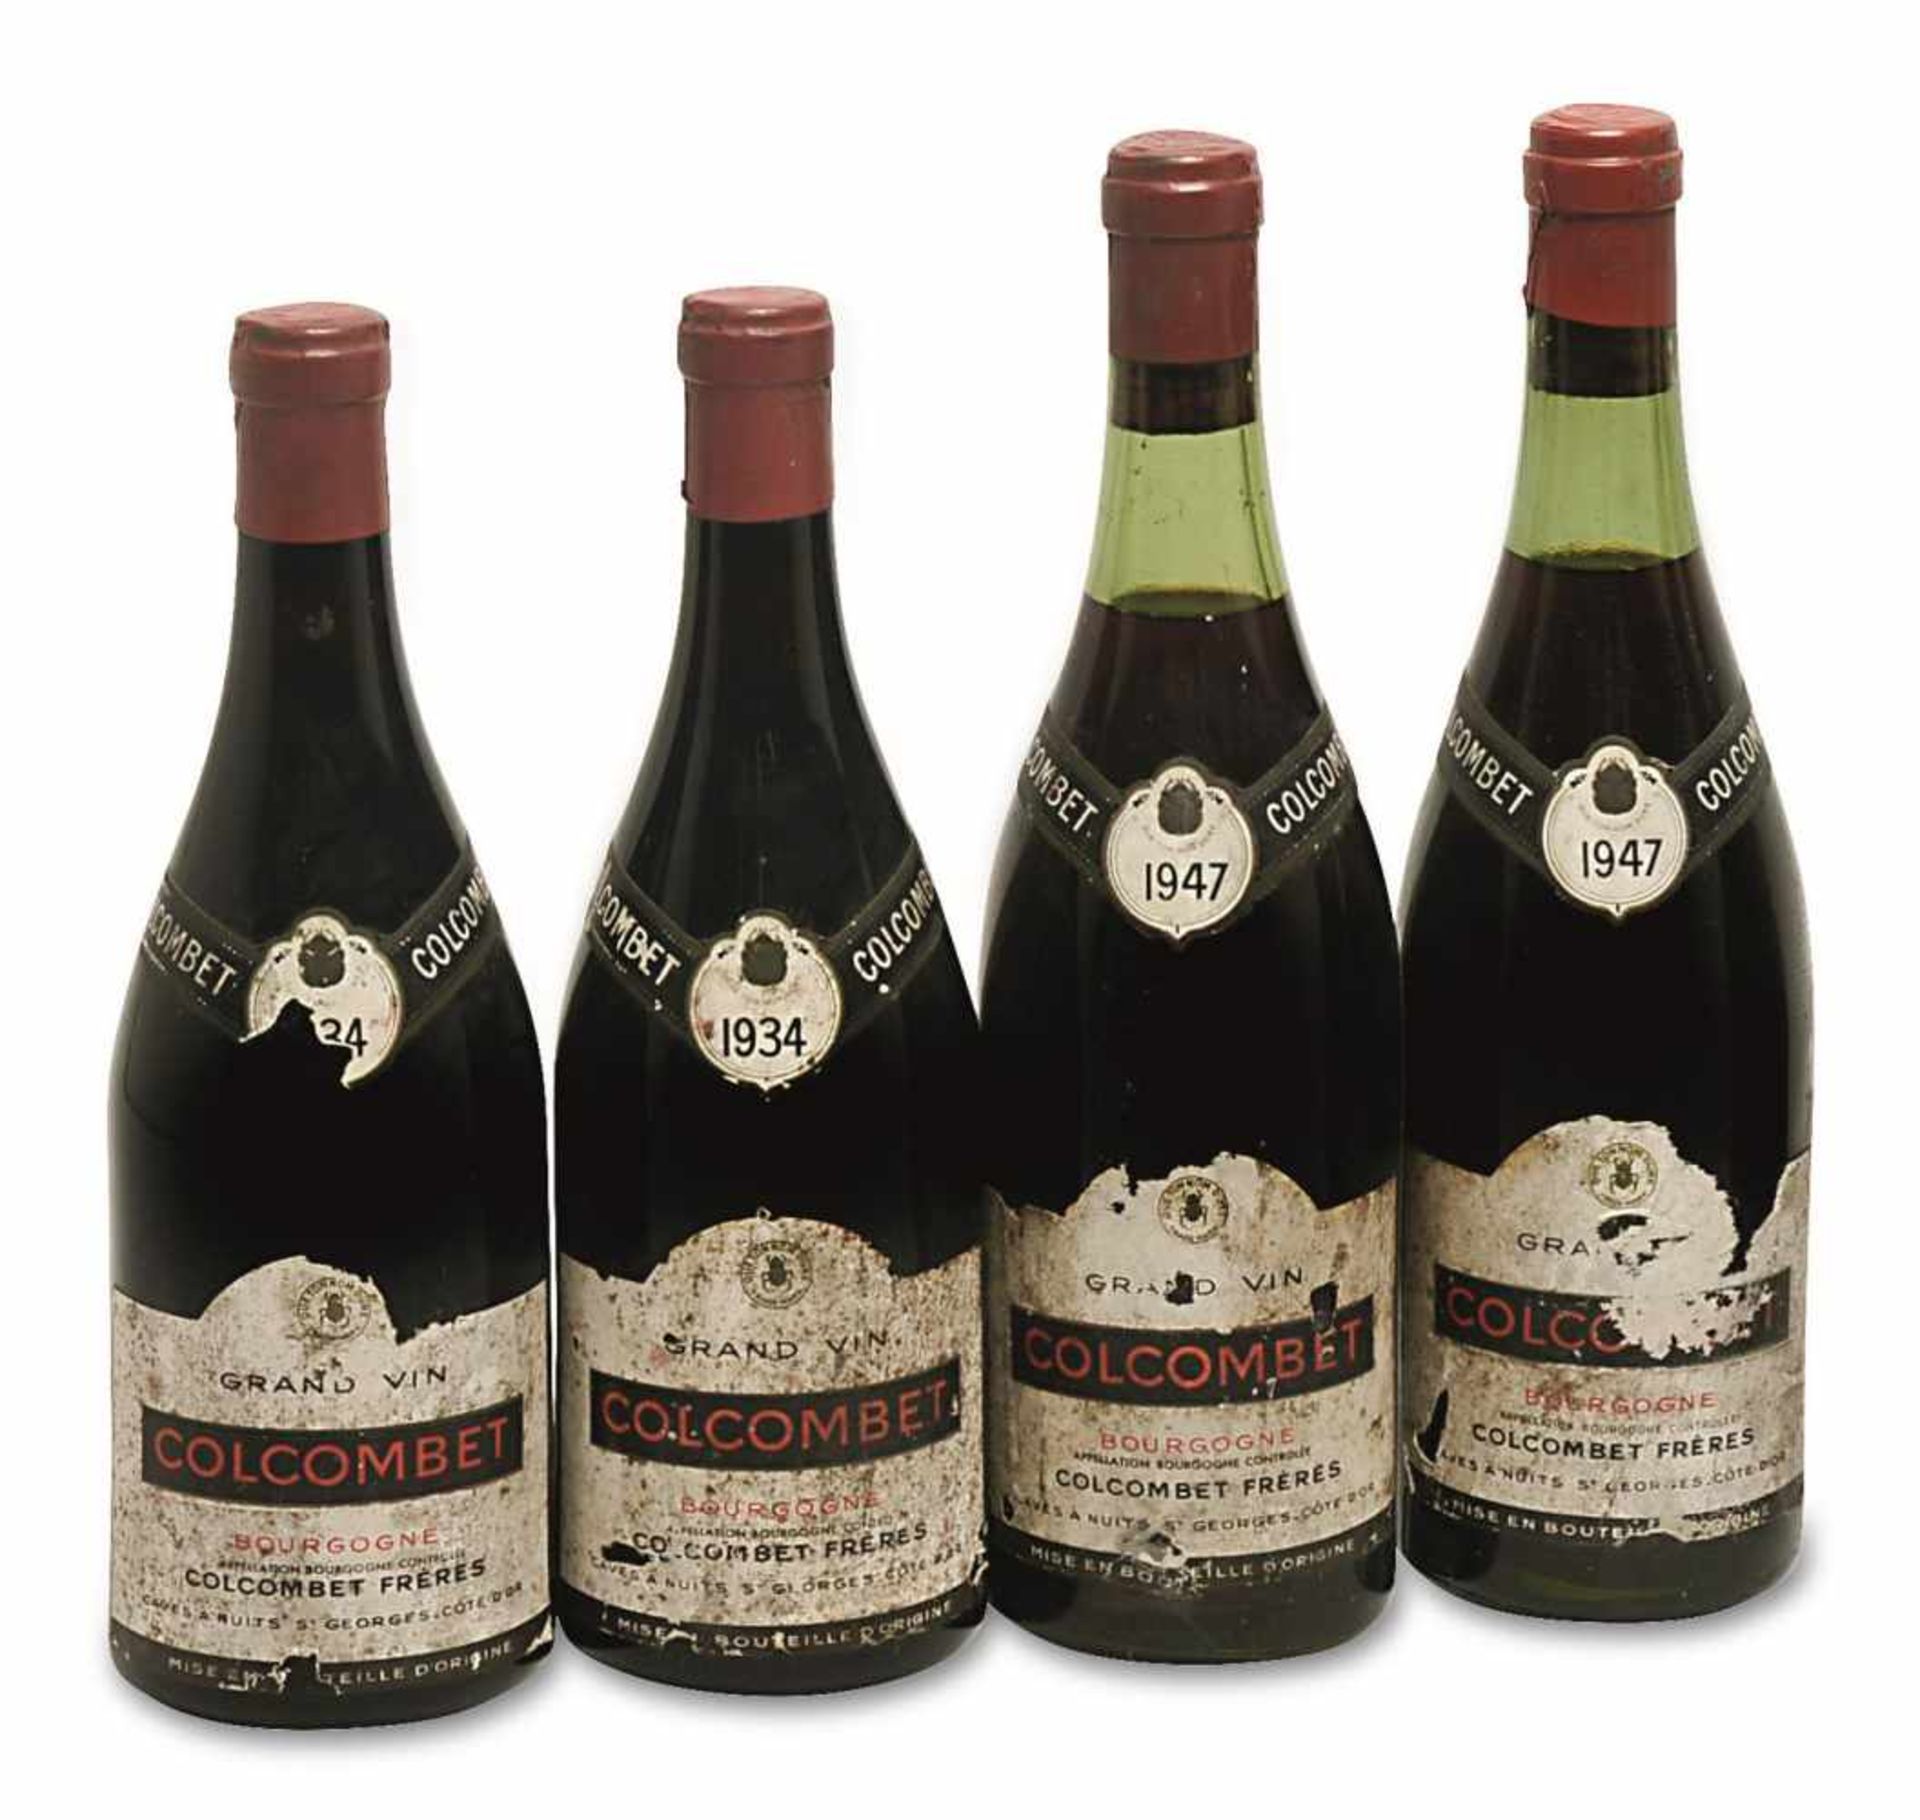 Vier Flaschen Colcombet Burgund, Frankreich Colcombet Frères, Grand Vin. Jahrgang: Zwei Flaschen